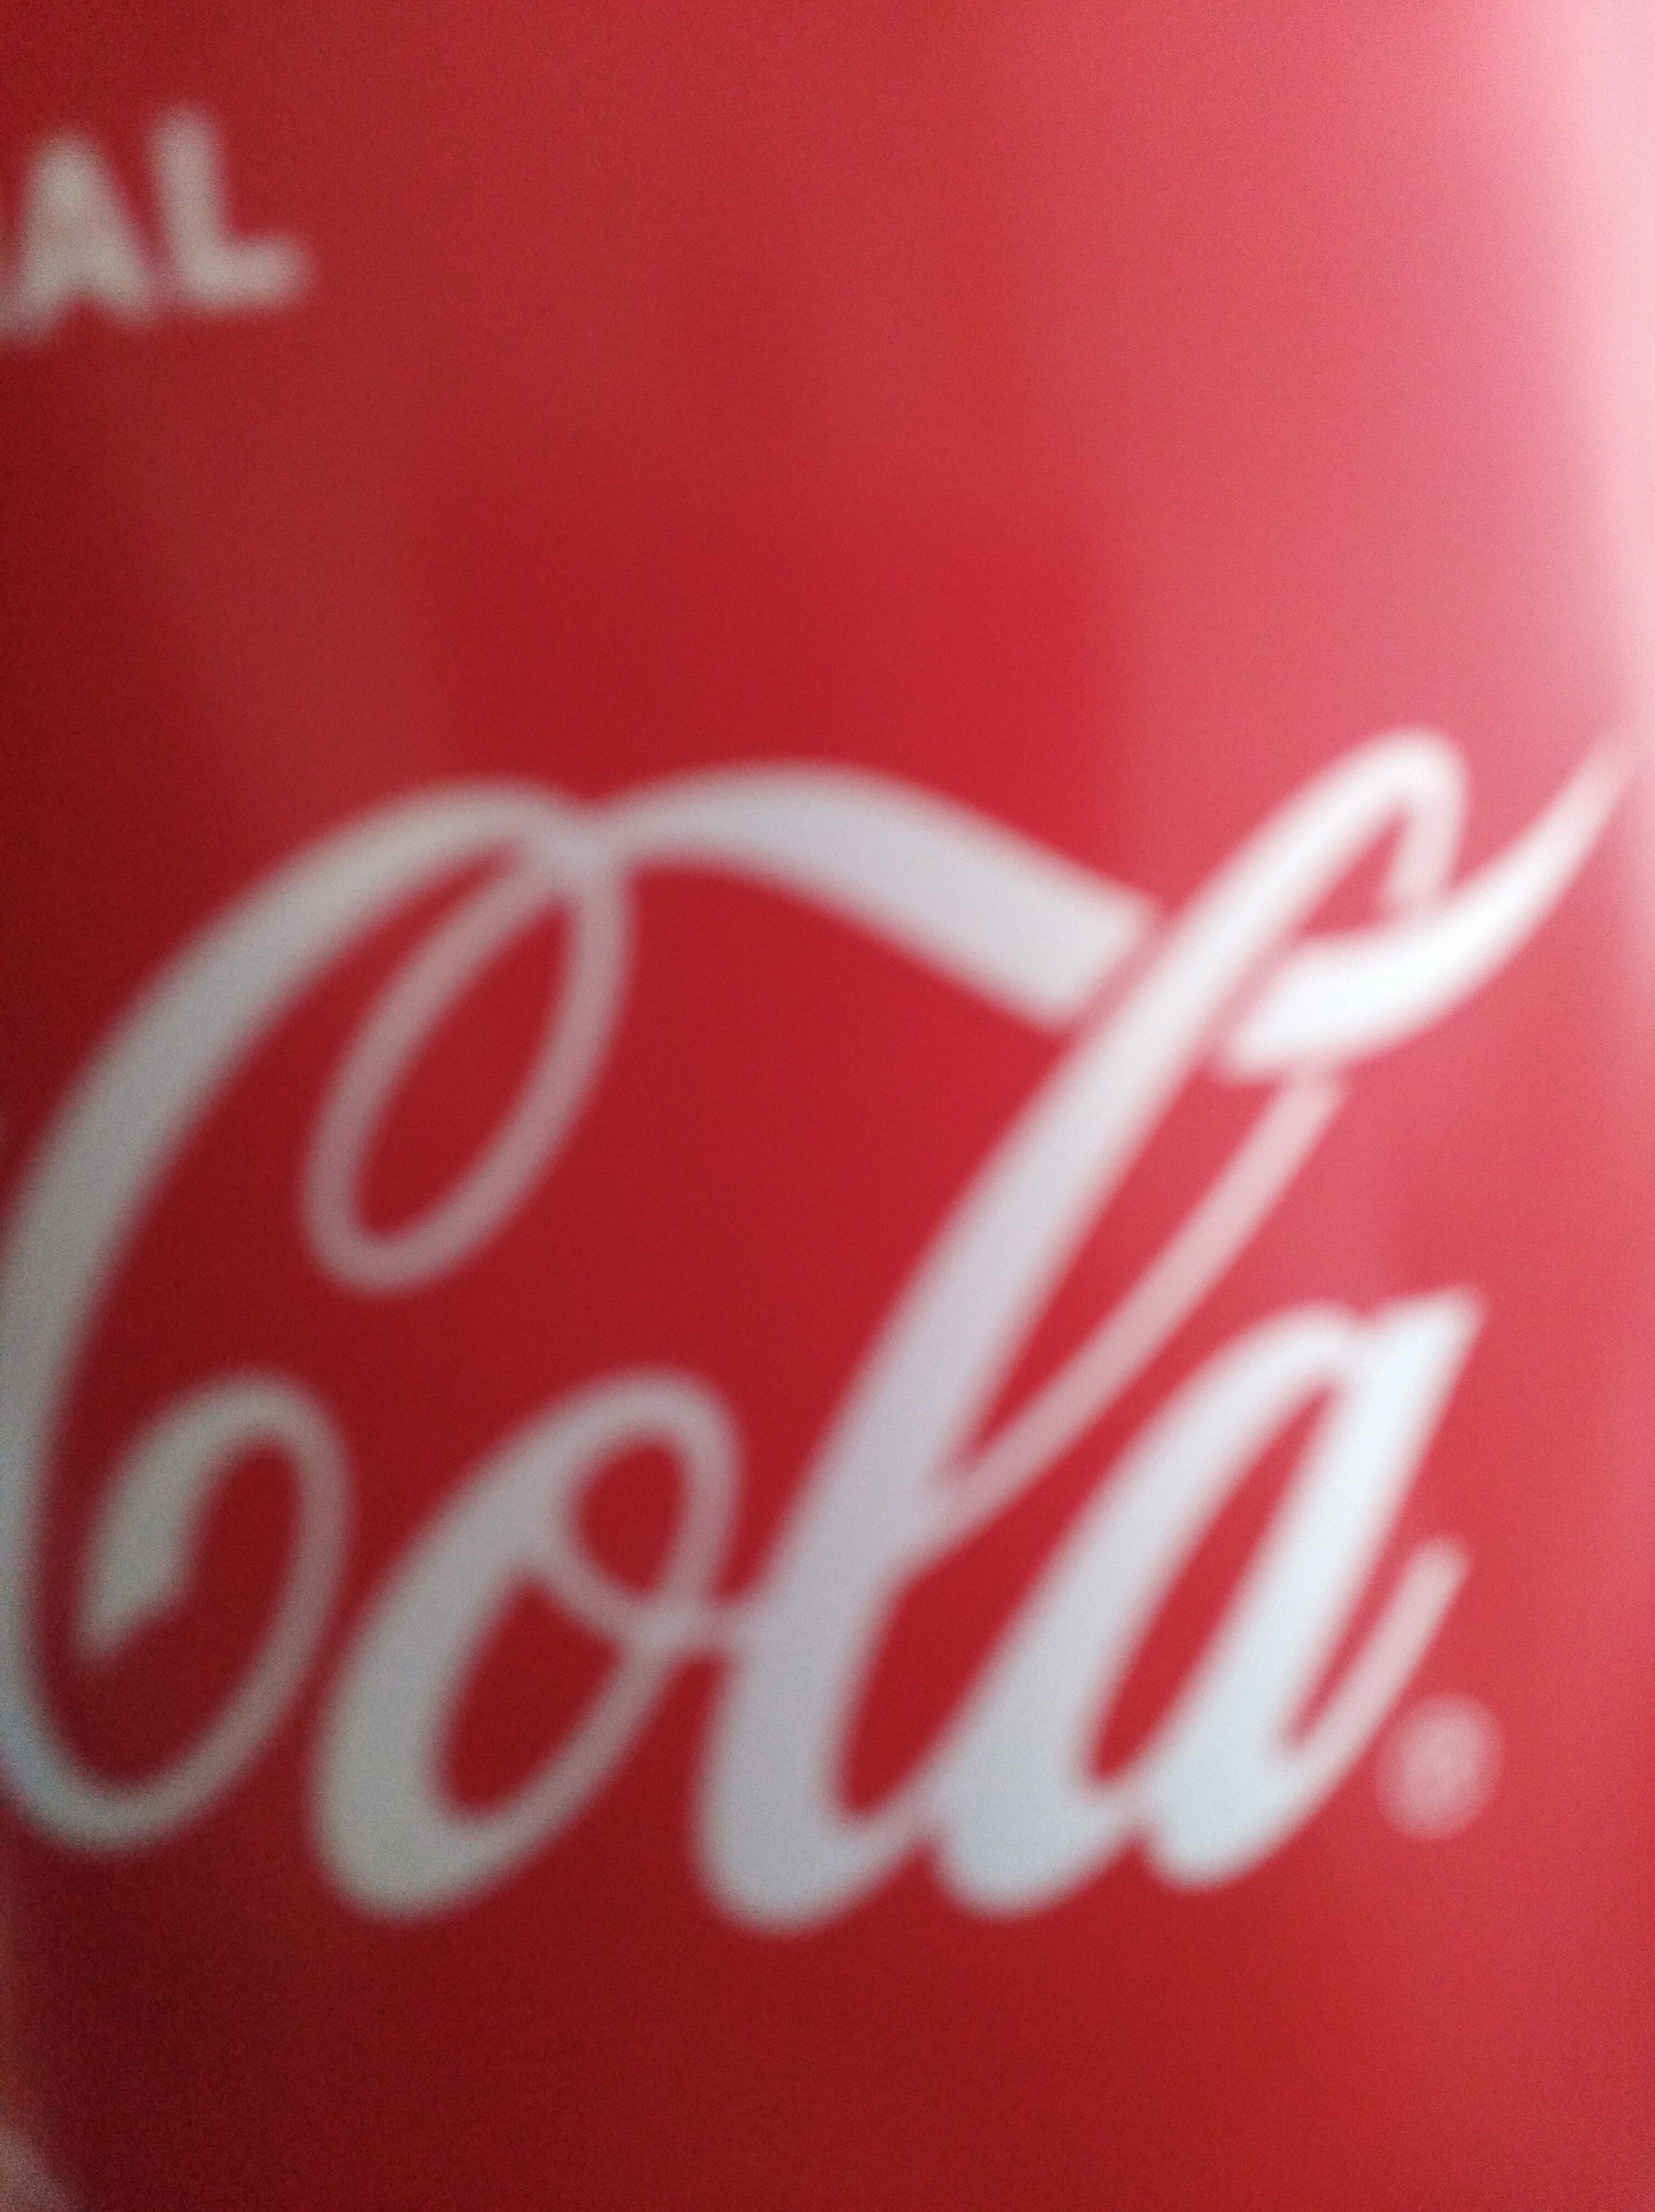 Coca-Cola 2l - نتاج